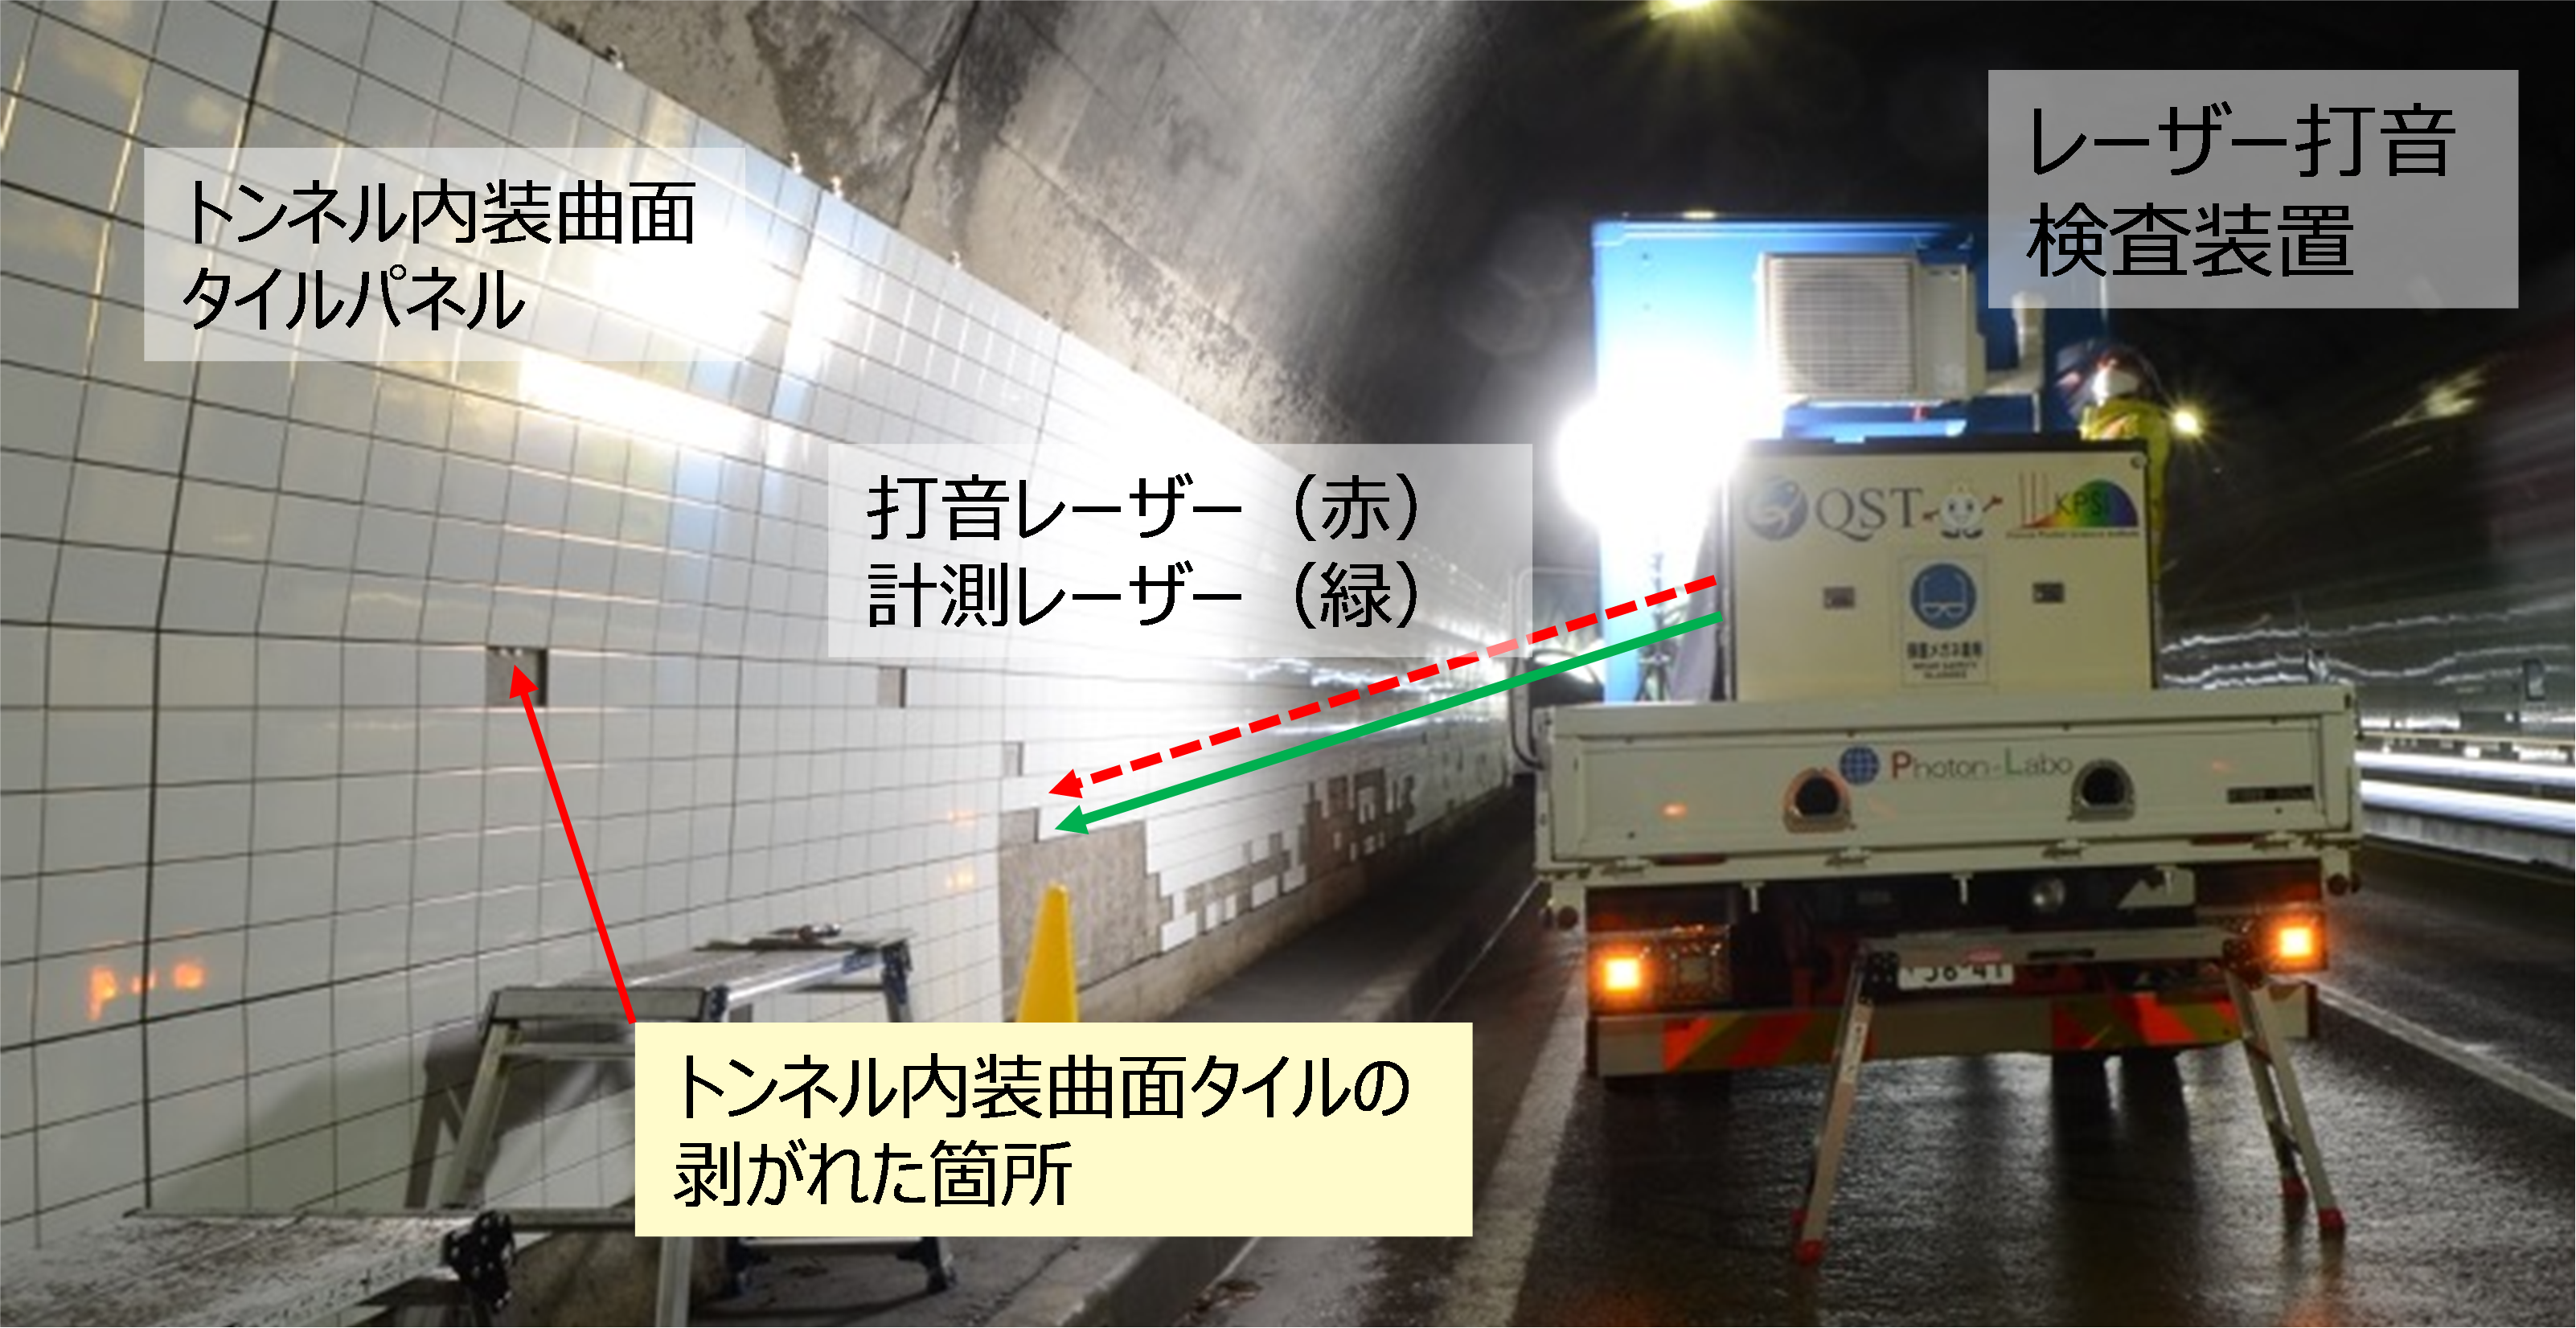 トンネル内装曲面タイルパネルにおけるレーザー打音検査状況